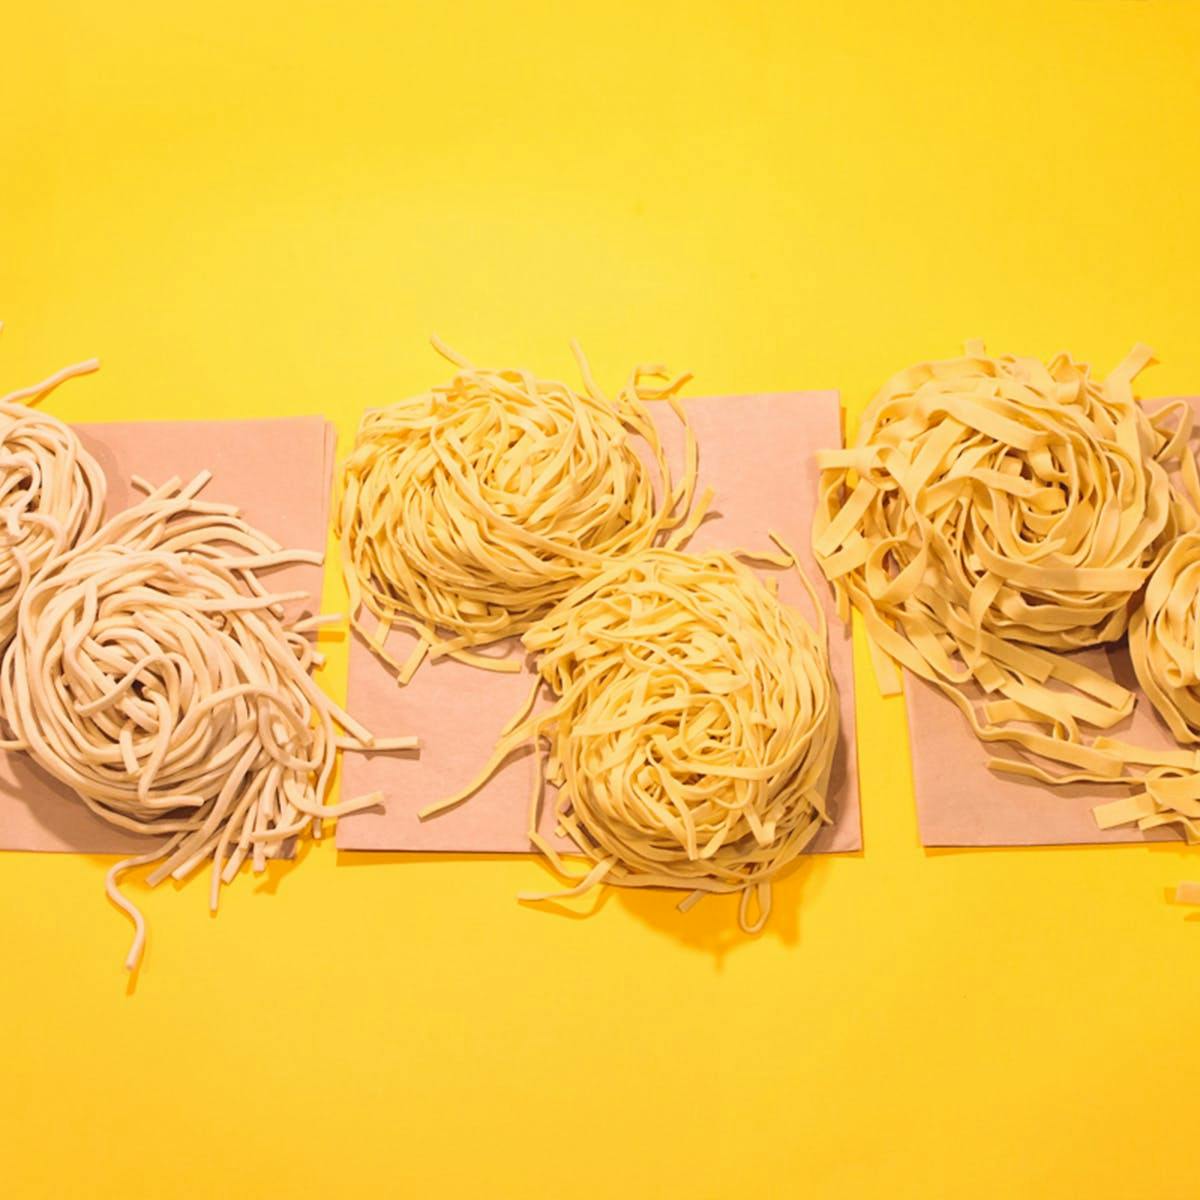 spaghetti dinner background